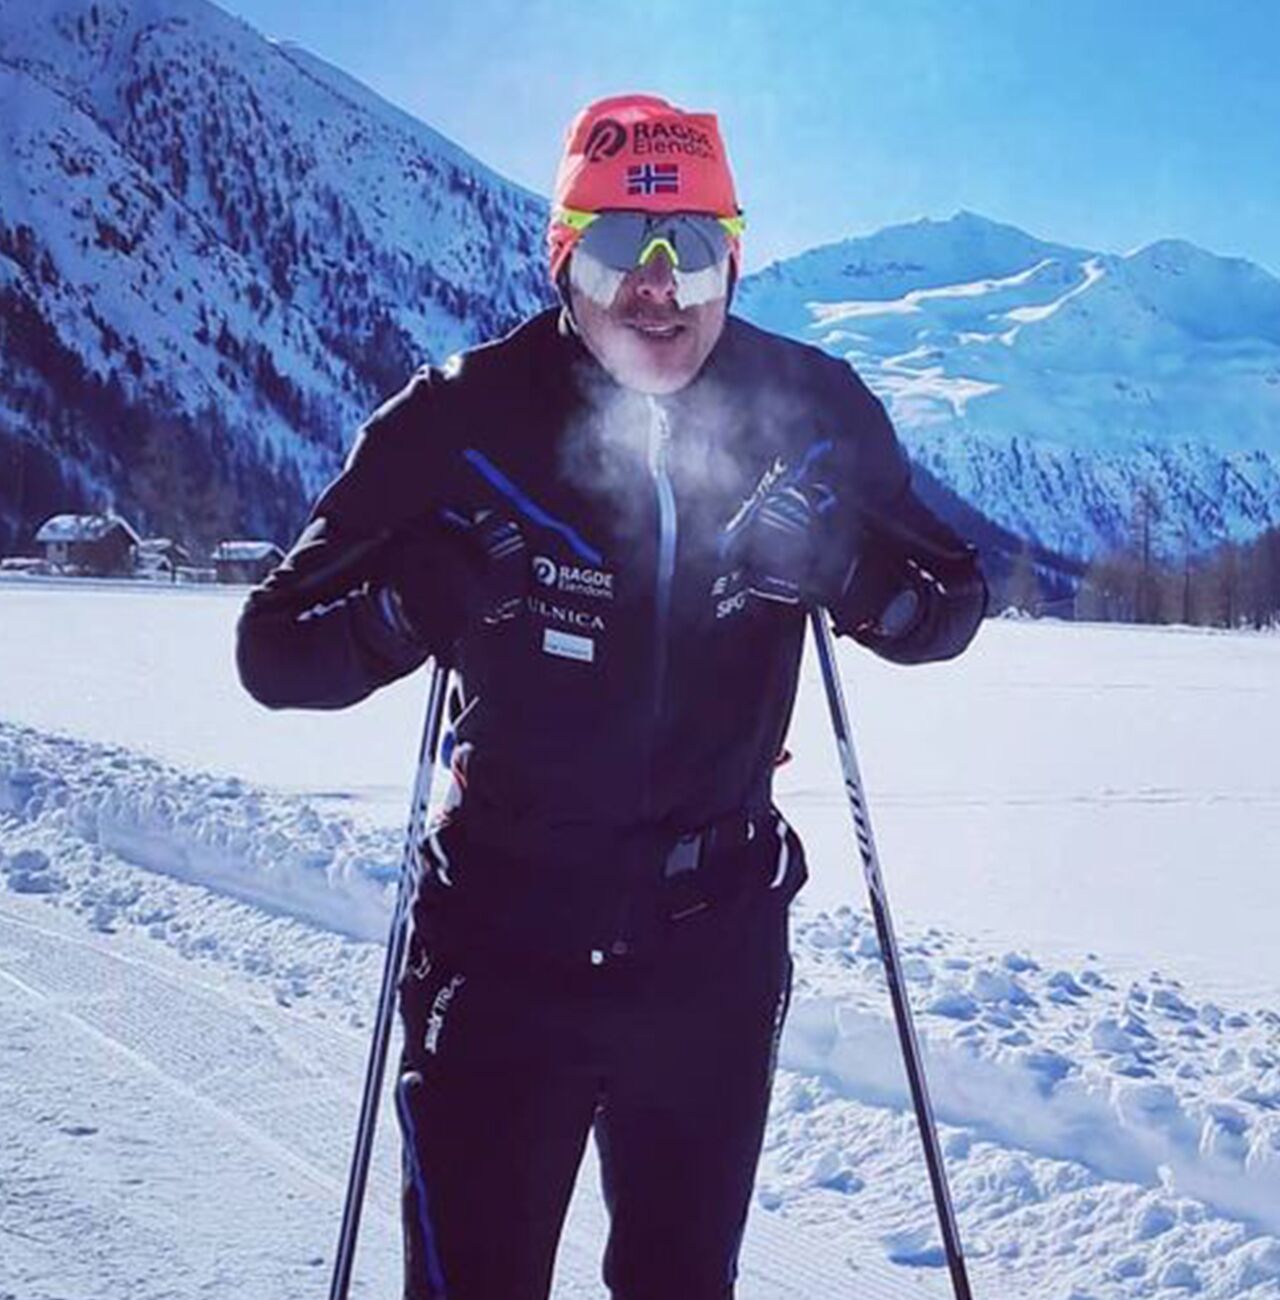 Лыжников 36. Андерс Окланд лыжник. Мировой рекорд 2 км на лыжах. Симен Эстенсен.